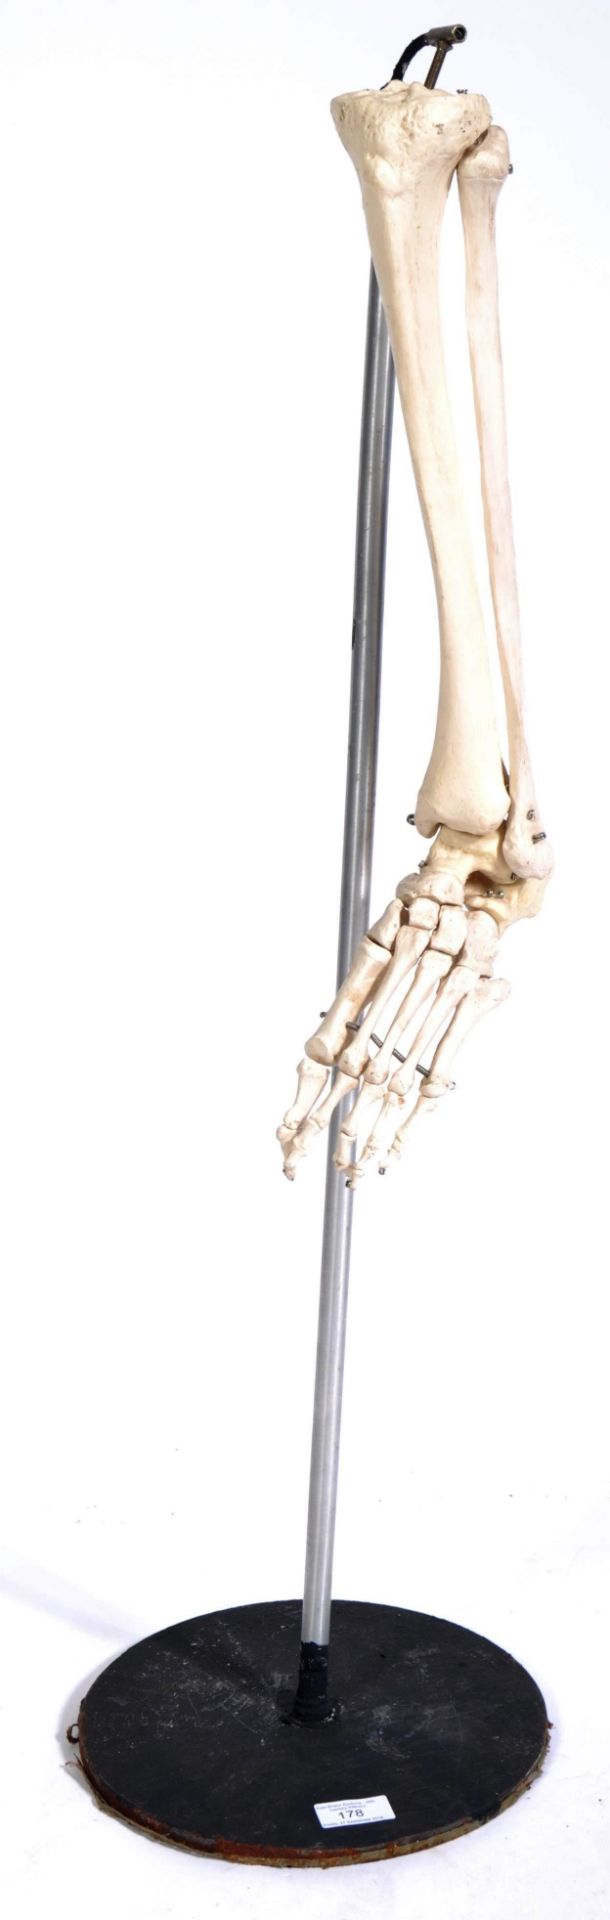 VINTAGE MEDICAL TEACHING HUMAN SKELETON LEG DISPLAY